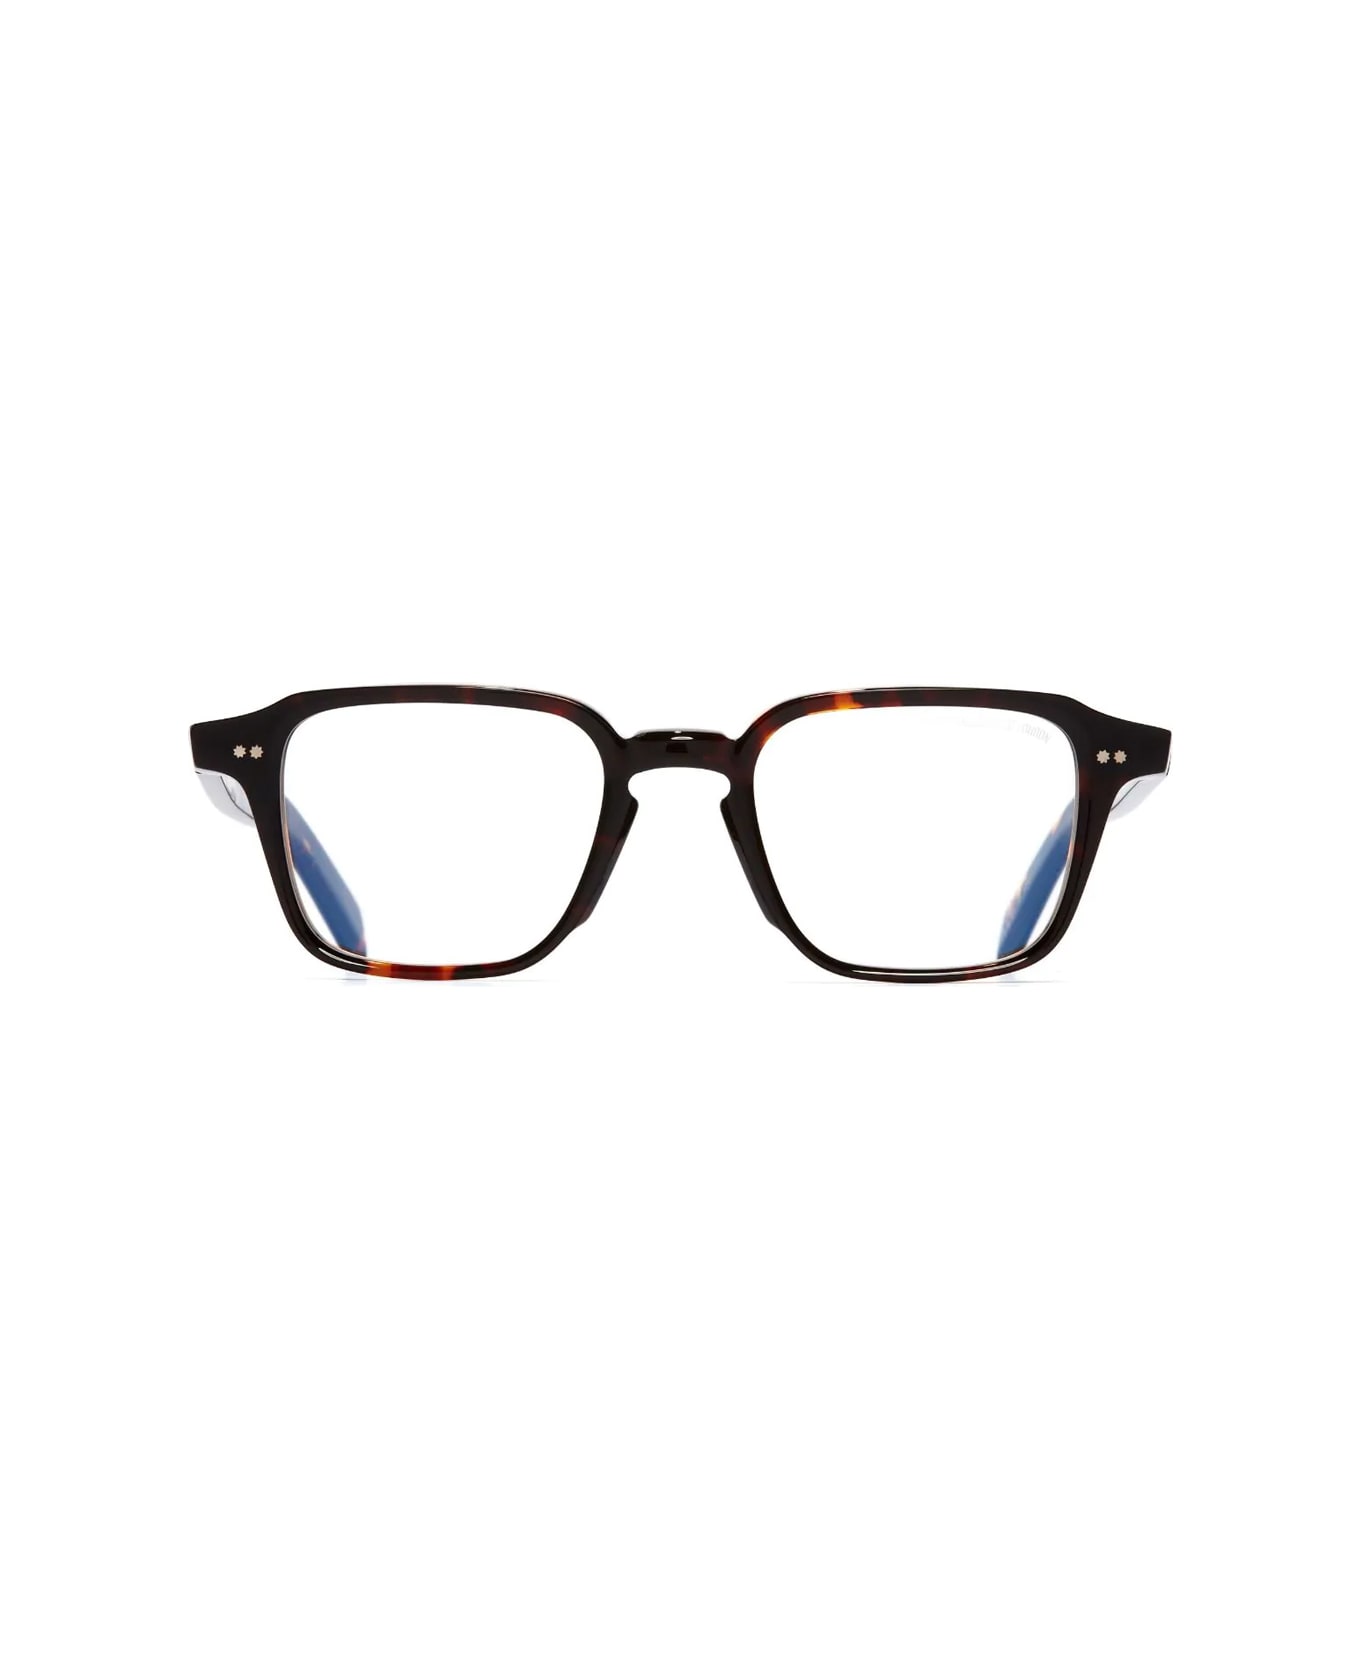 Cutler and Gross Gr07 02 Multi Havana Glasses - Marrone